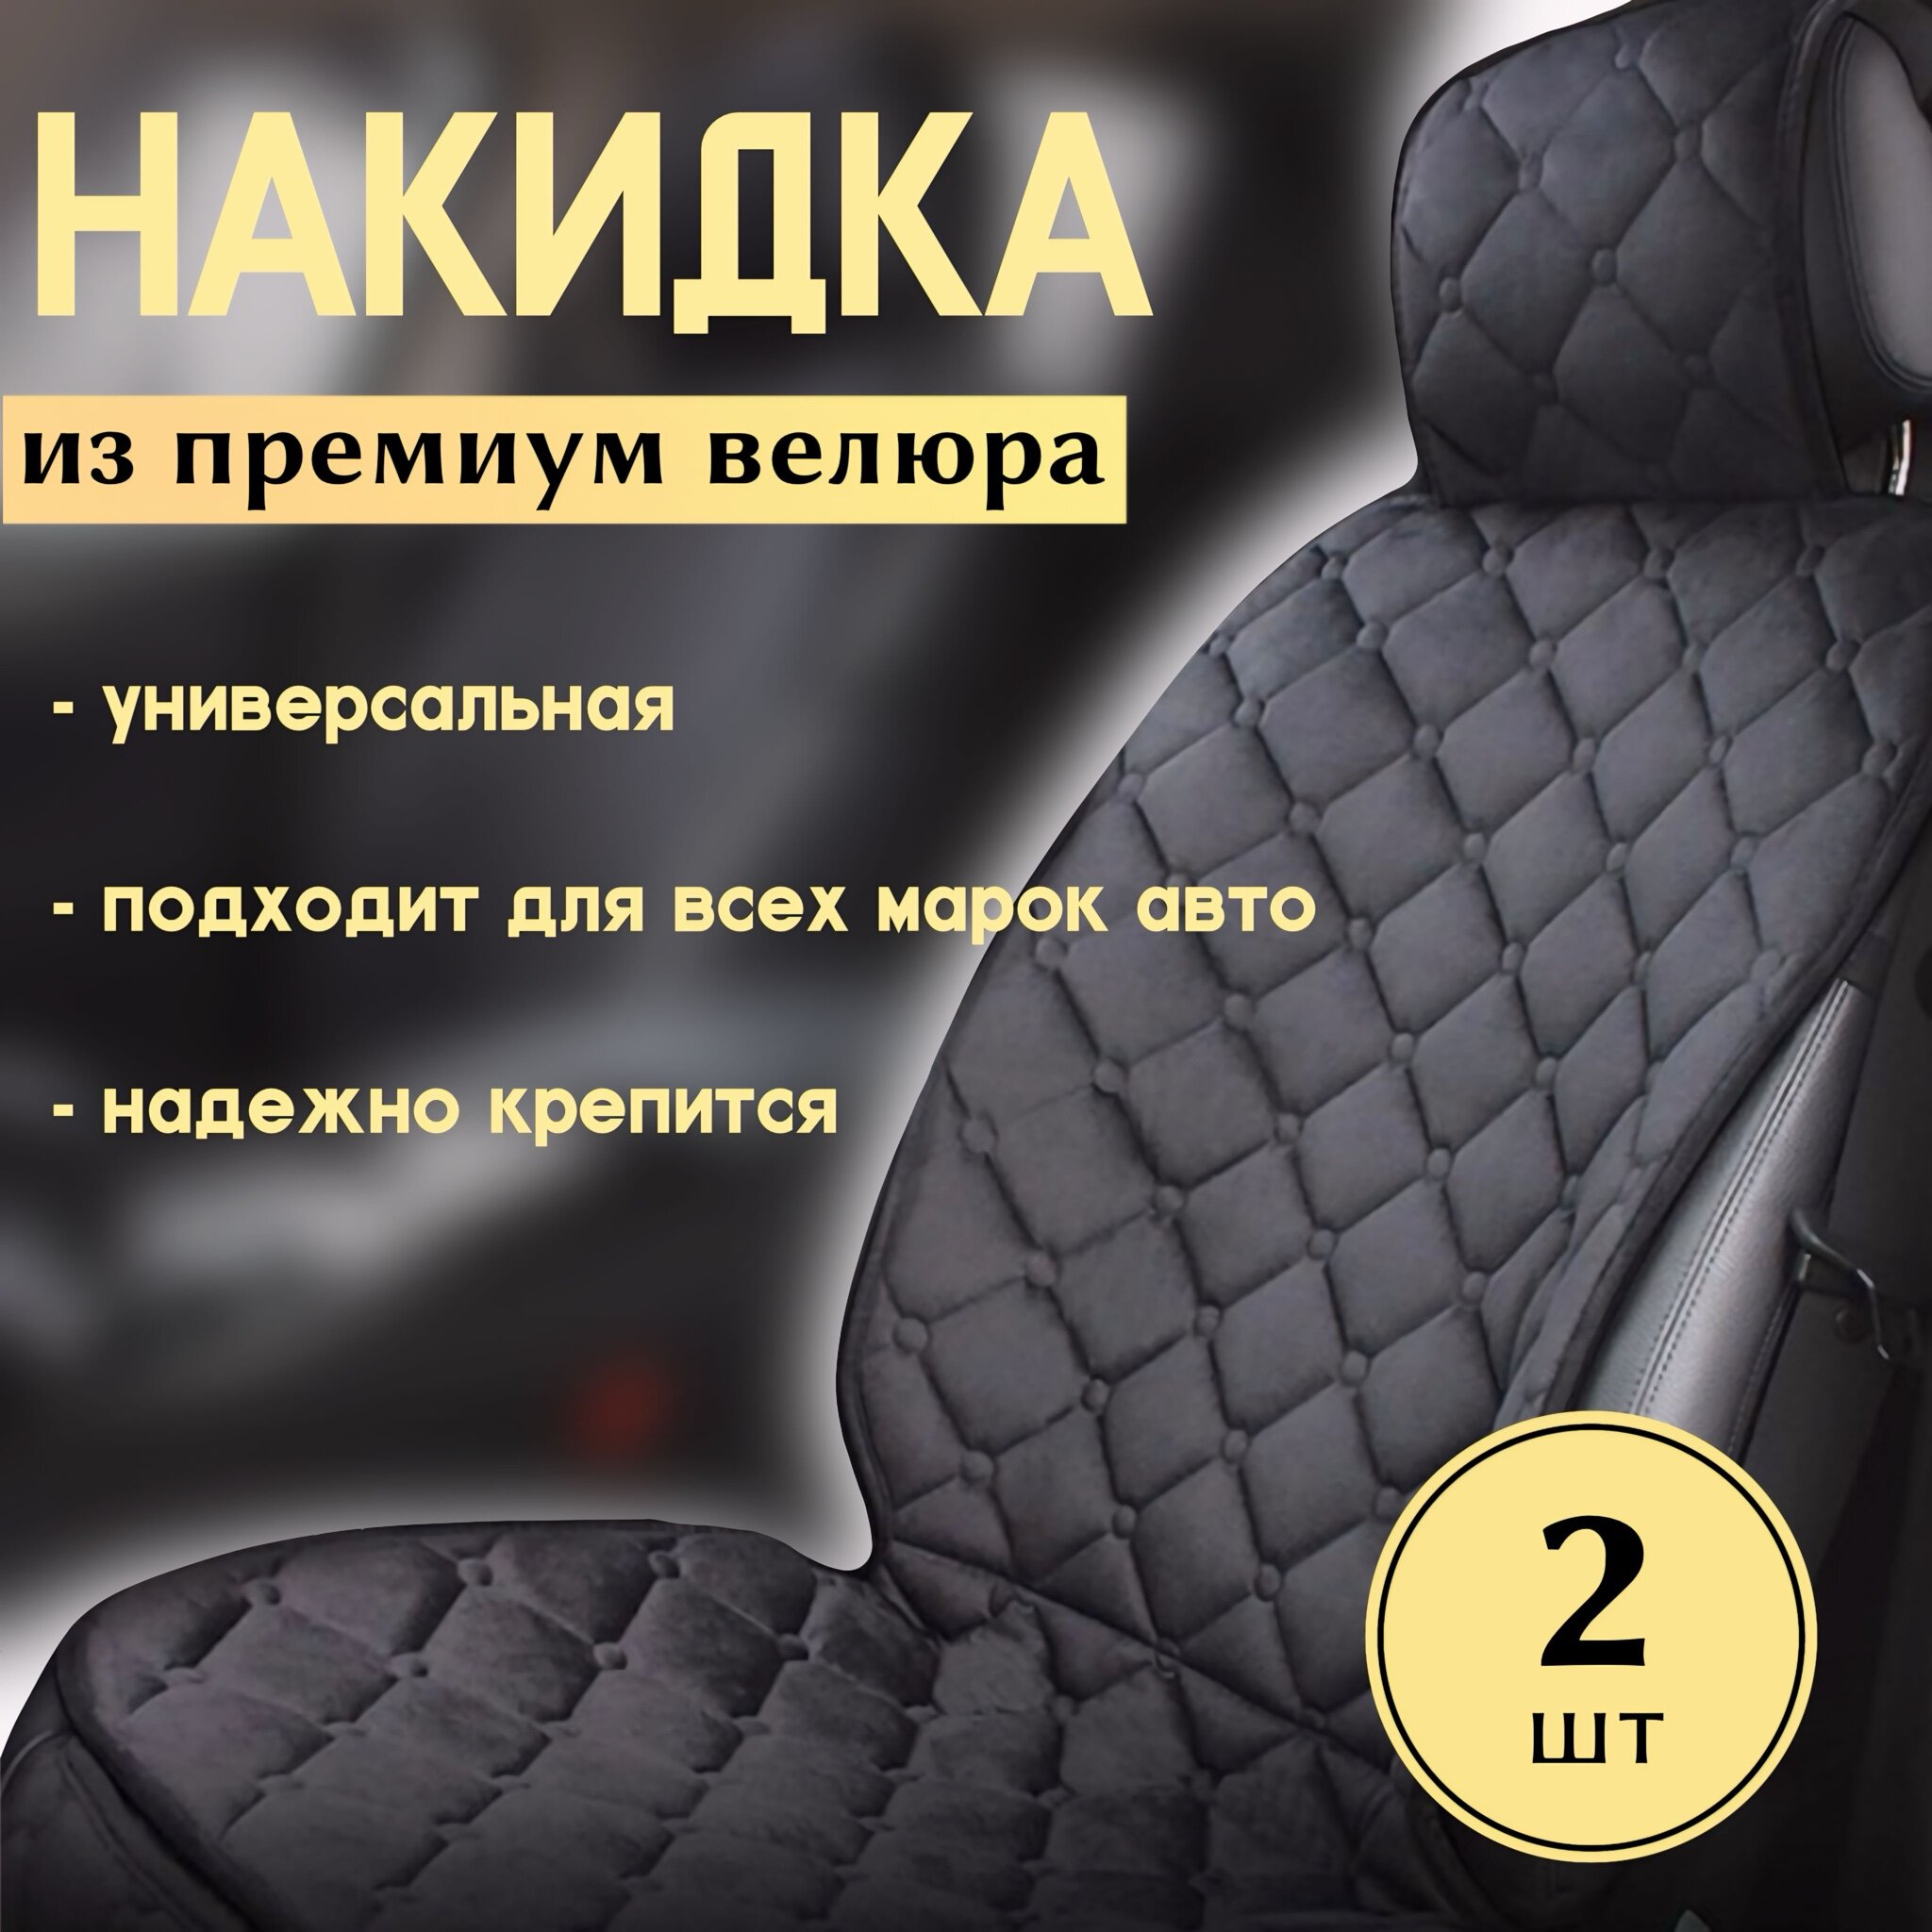 Защитные универсальные велюровые накидки на передние сиденья автомобиля, комплект 2 шт.